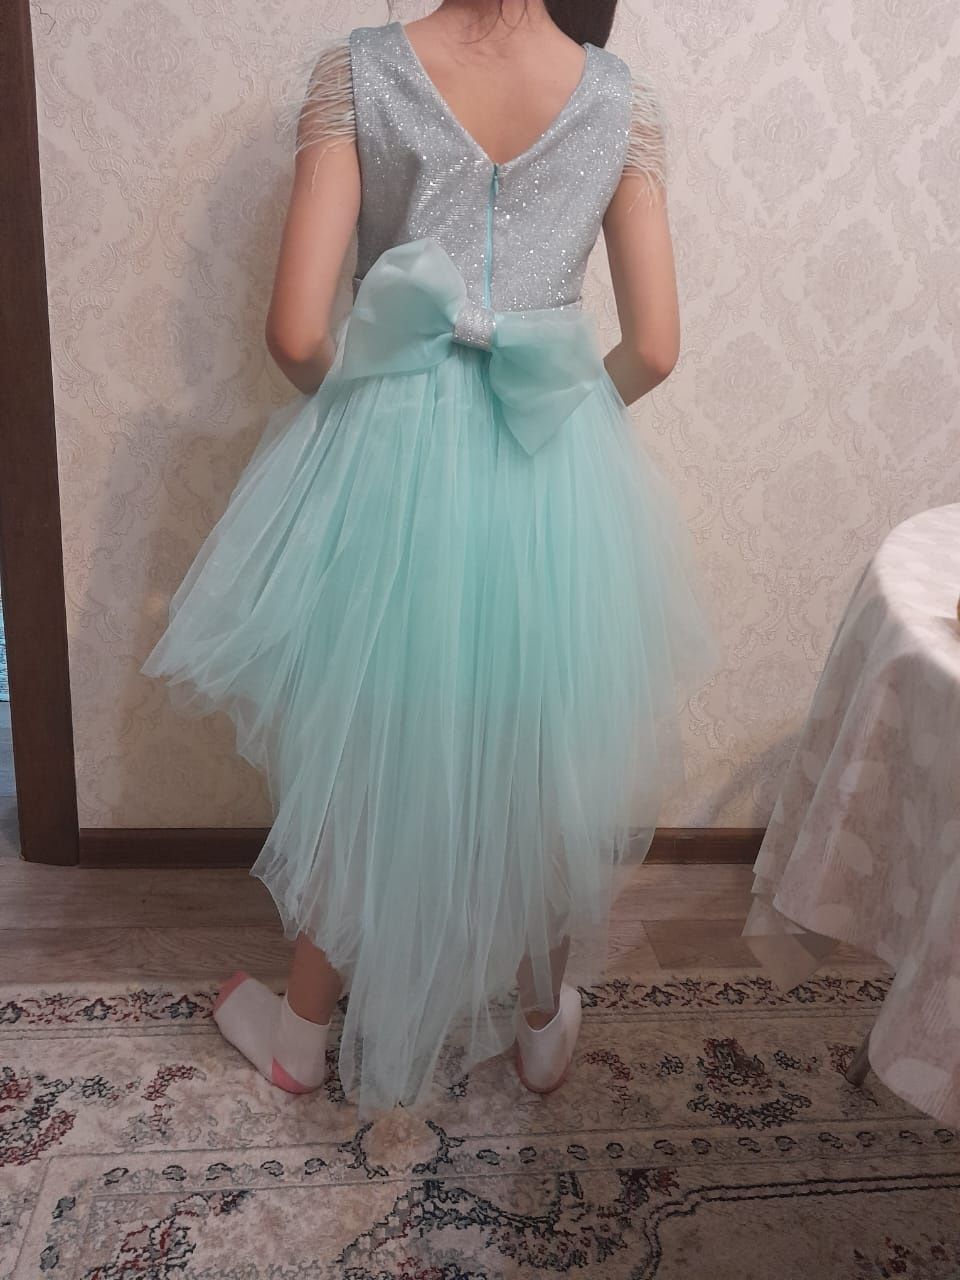 Платье и танцевальный костюм практически новые, для девочки 7-8лет